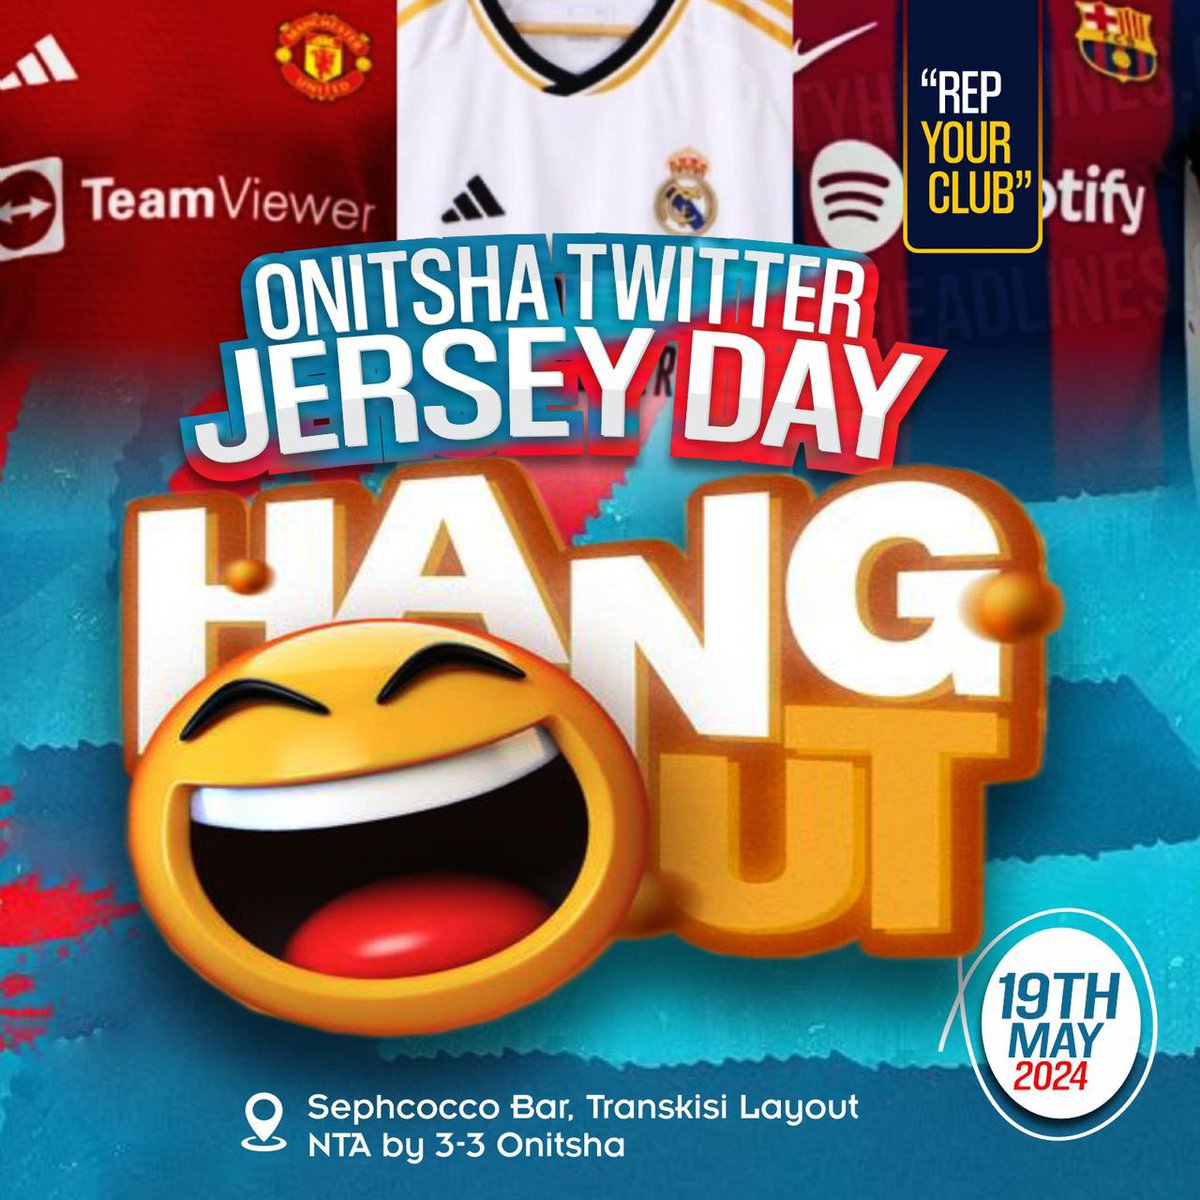 #OnitshaTwitterJerseyHangout #RepYourClub #OnitshaTwitterCommunity